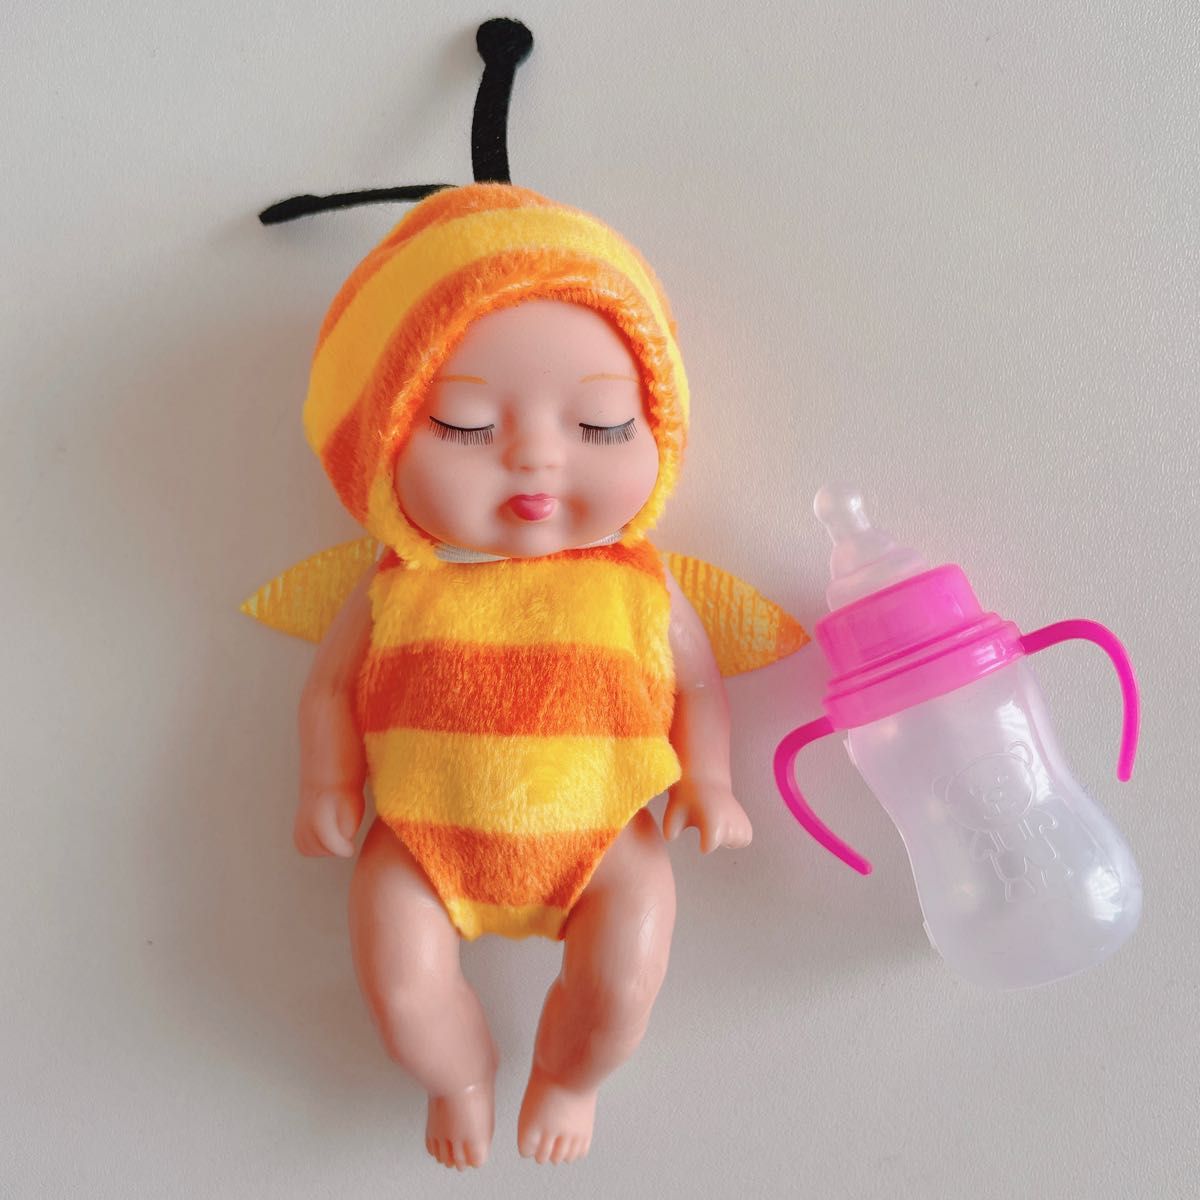 スリーピングベイビー 蜂さん 哺乳瓶付き 赤ちゃん人形 ドール ぬい活 ドル活 ぬいぐるみ すやすや赤ちゃん 着せ替え 寝顔